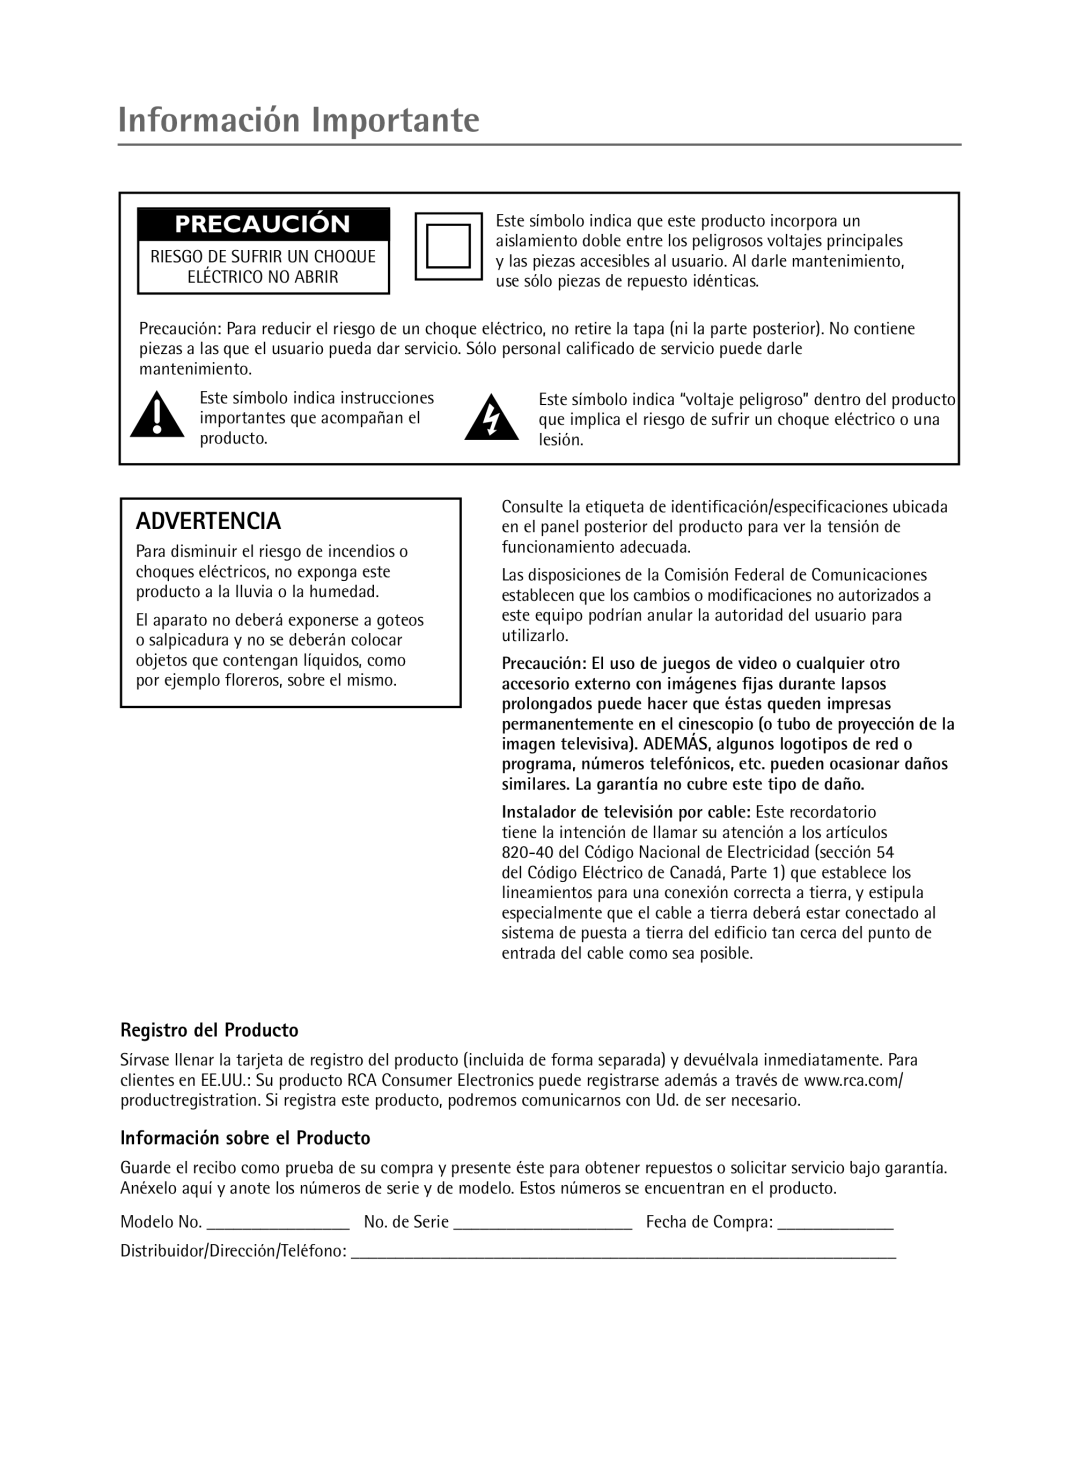 RCA Televison manual Información Importante, Advertencia, Registro del Producto, Información sobre el Producto, Precaución 